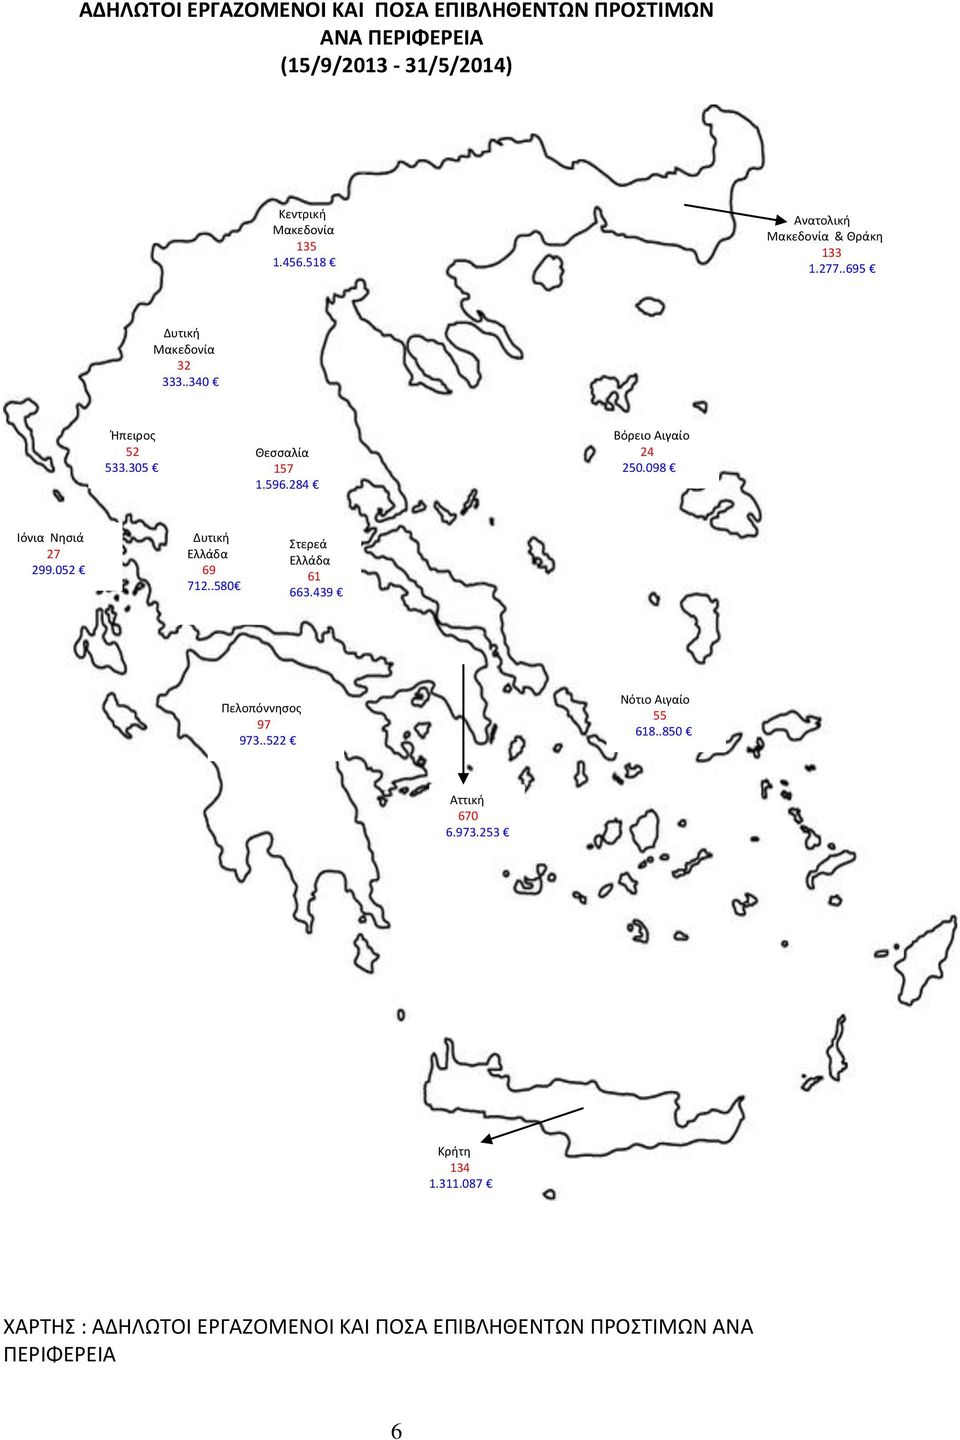 284 Βόρειο Αιγαίο 24 250.098 Ιόνια Νησιά 27 299.052 Δυτική Ελλάδα 69 712..580 Στερεά Ελλάδα 61 663.439 Πελοπόννησος 97 973.